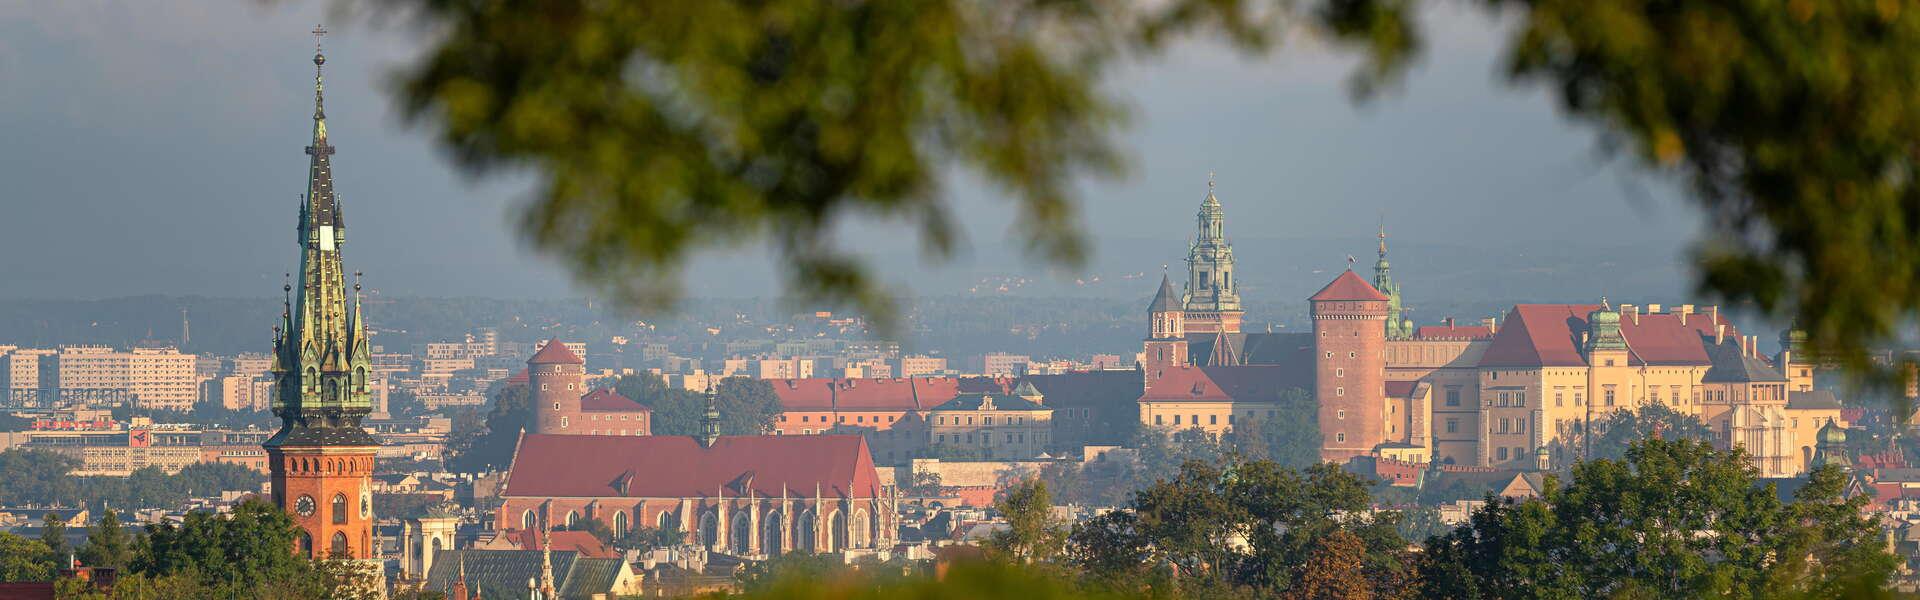 Widok z Kopca Kraka na stare miasto. Widoczne wieże kościołów, Wawel i charakterystyczne budynki Krakowa. Wokół zielone gałązki drzew.